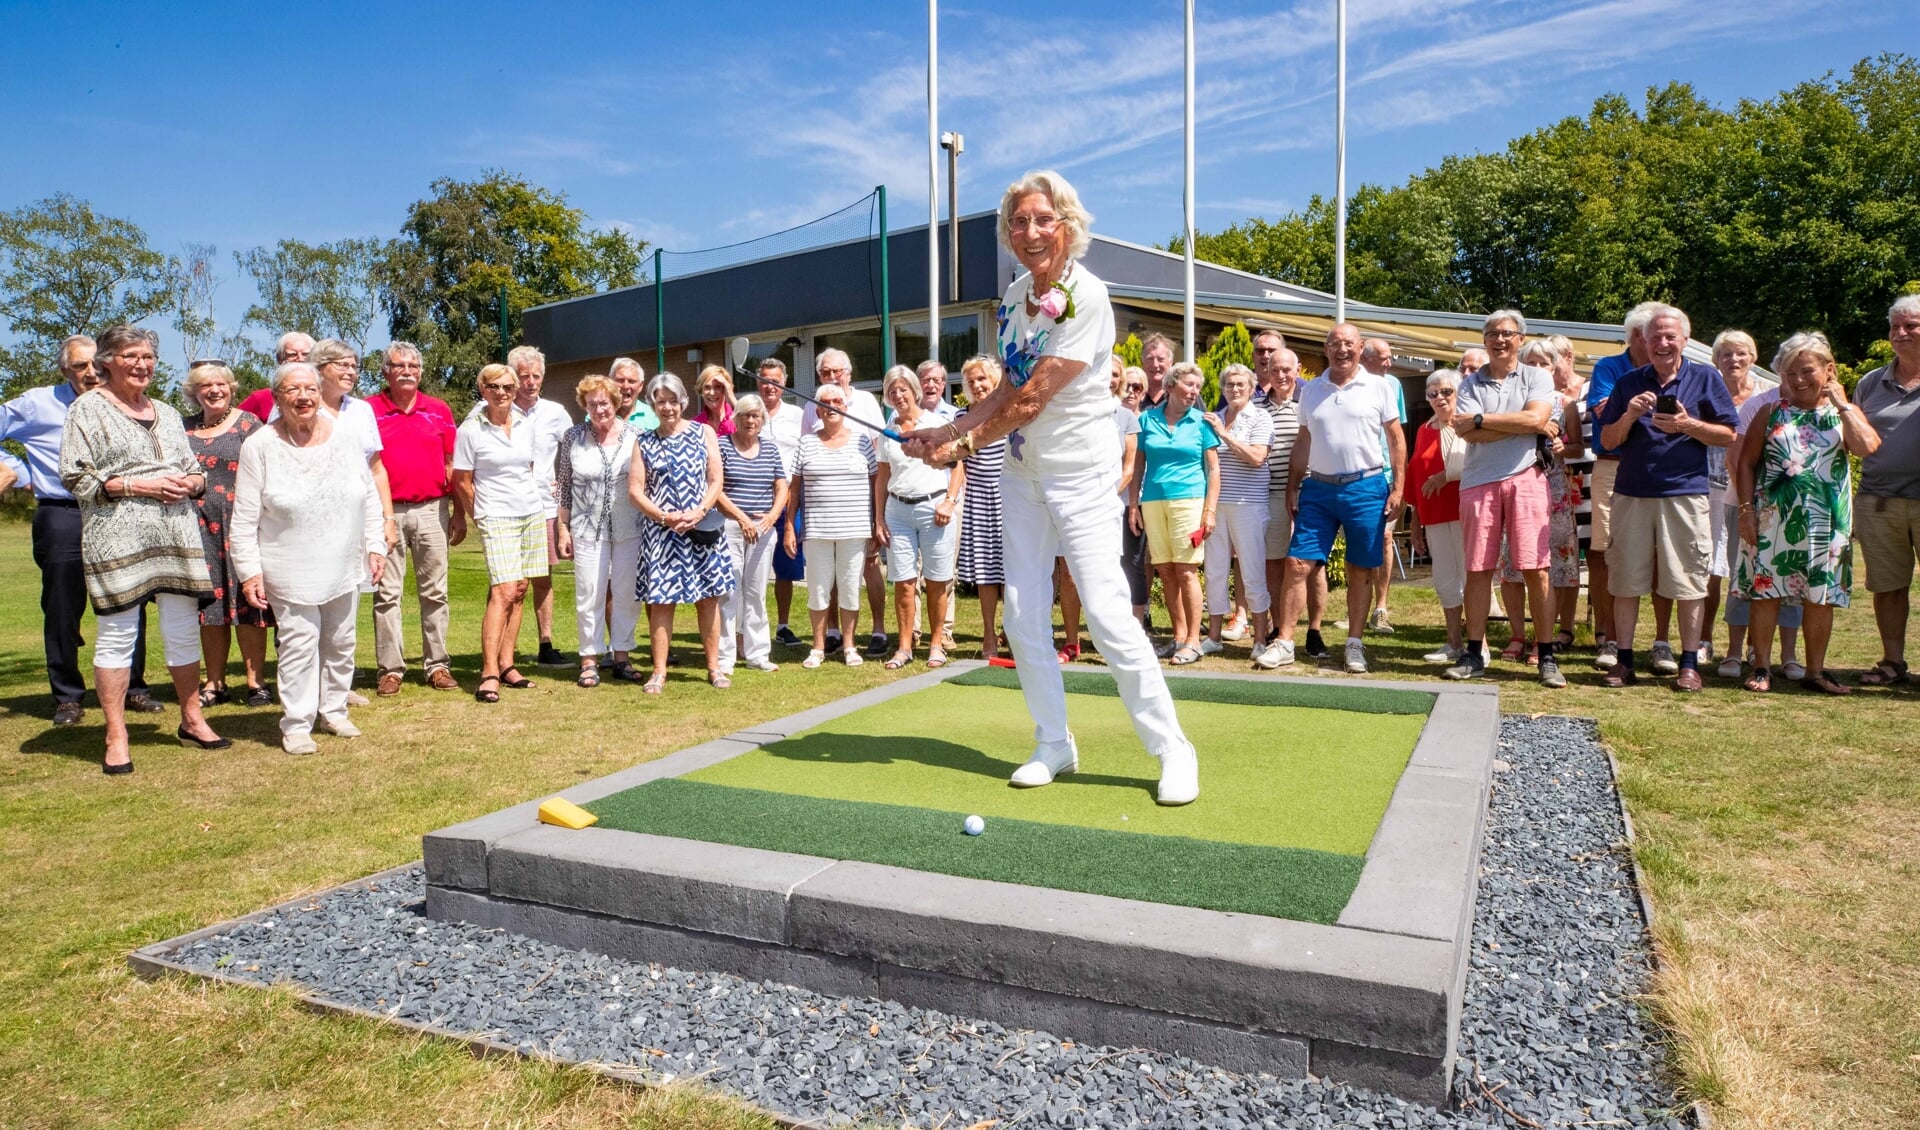 Susan Hosang vierde haar honderdste verjaardag bij golfclub 't Jagerspaadje.